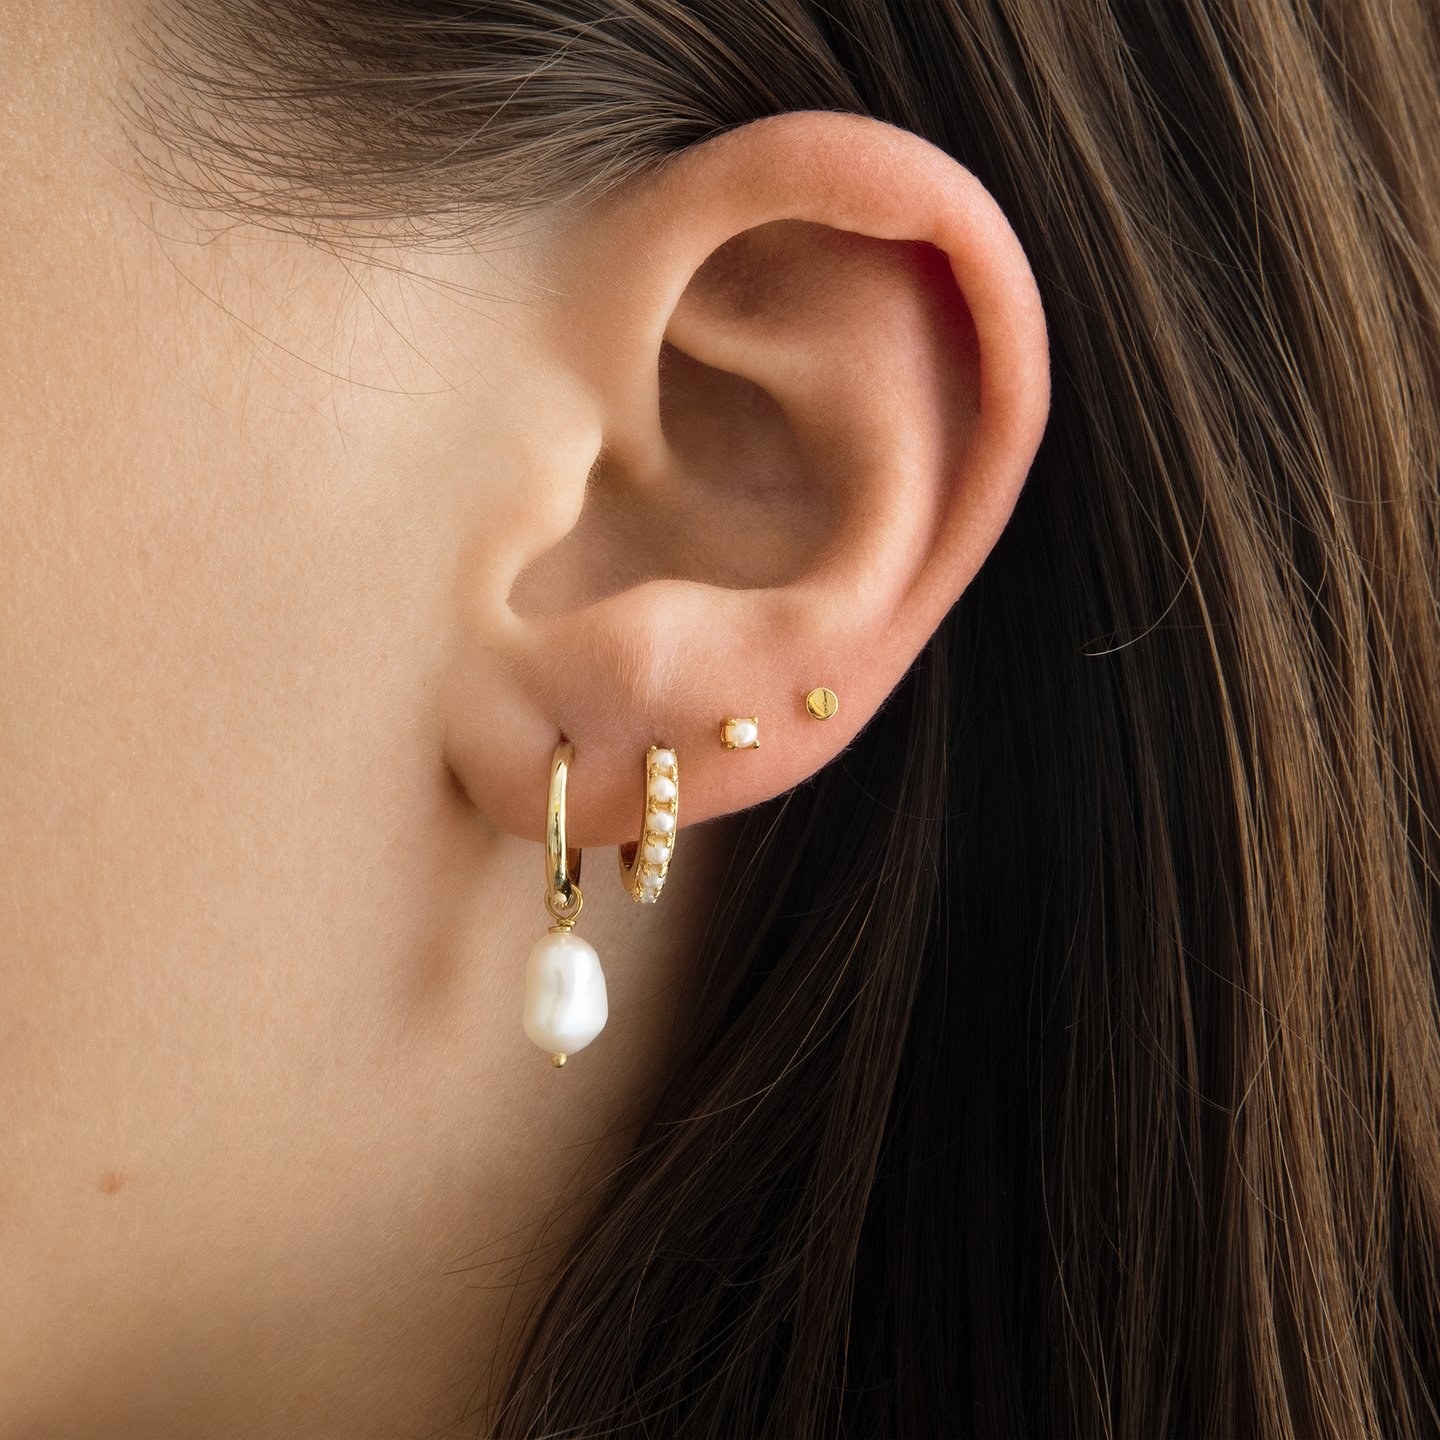 The earring on a model in an earscape